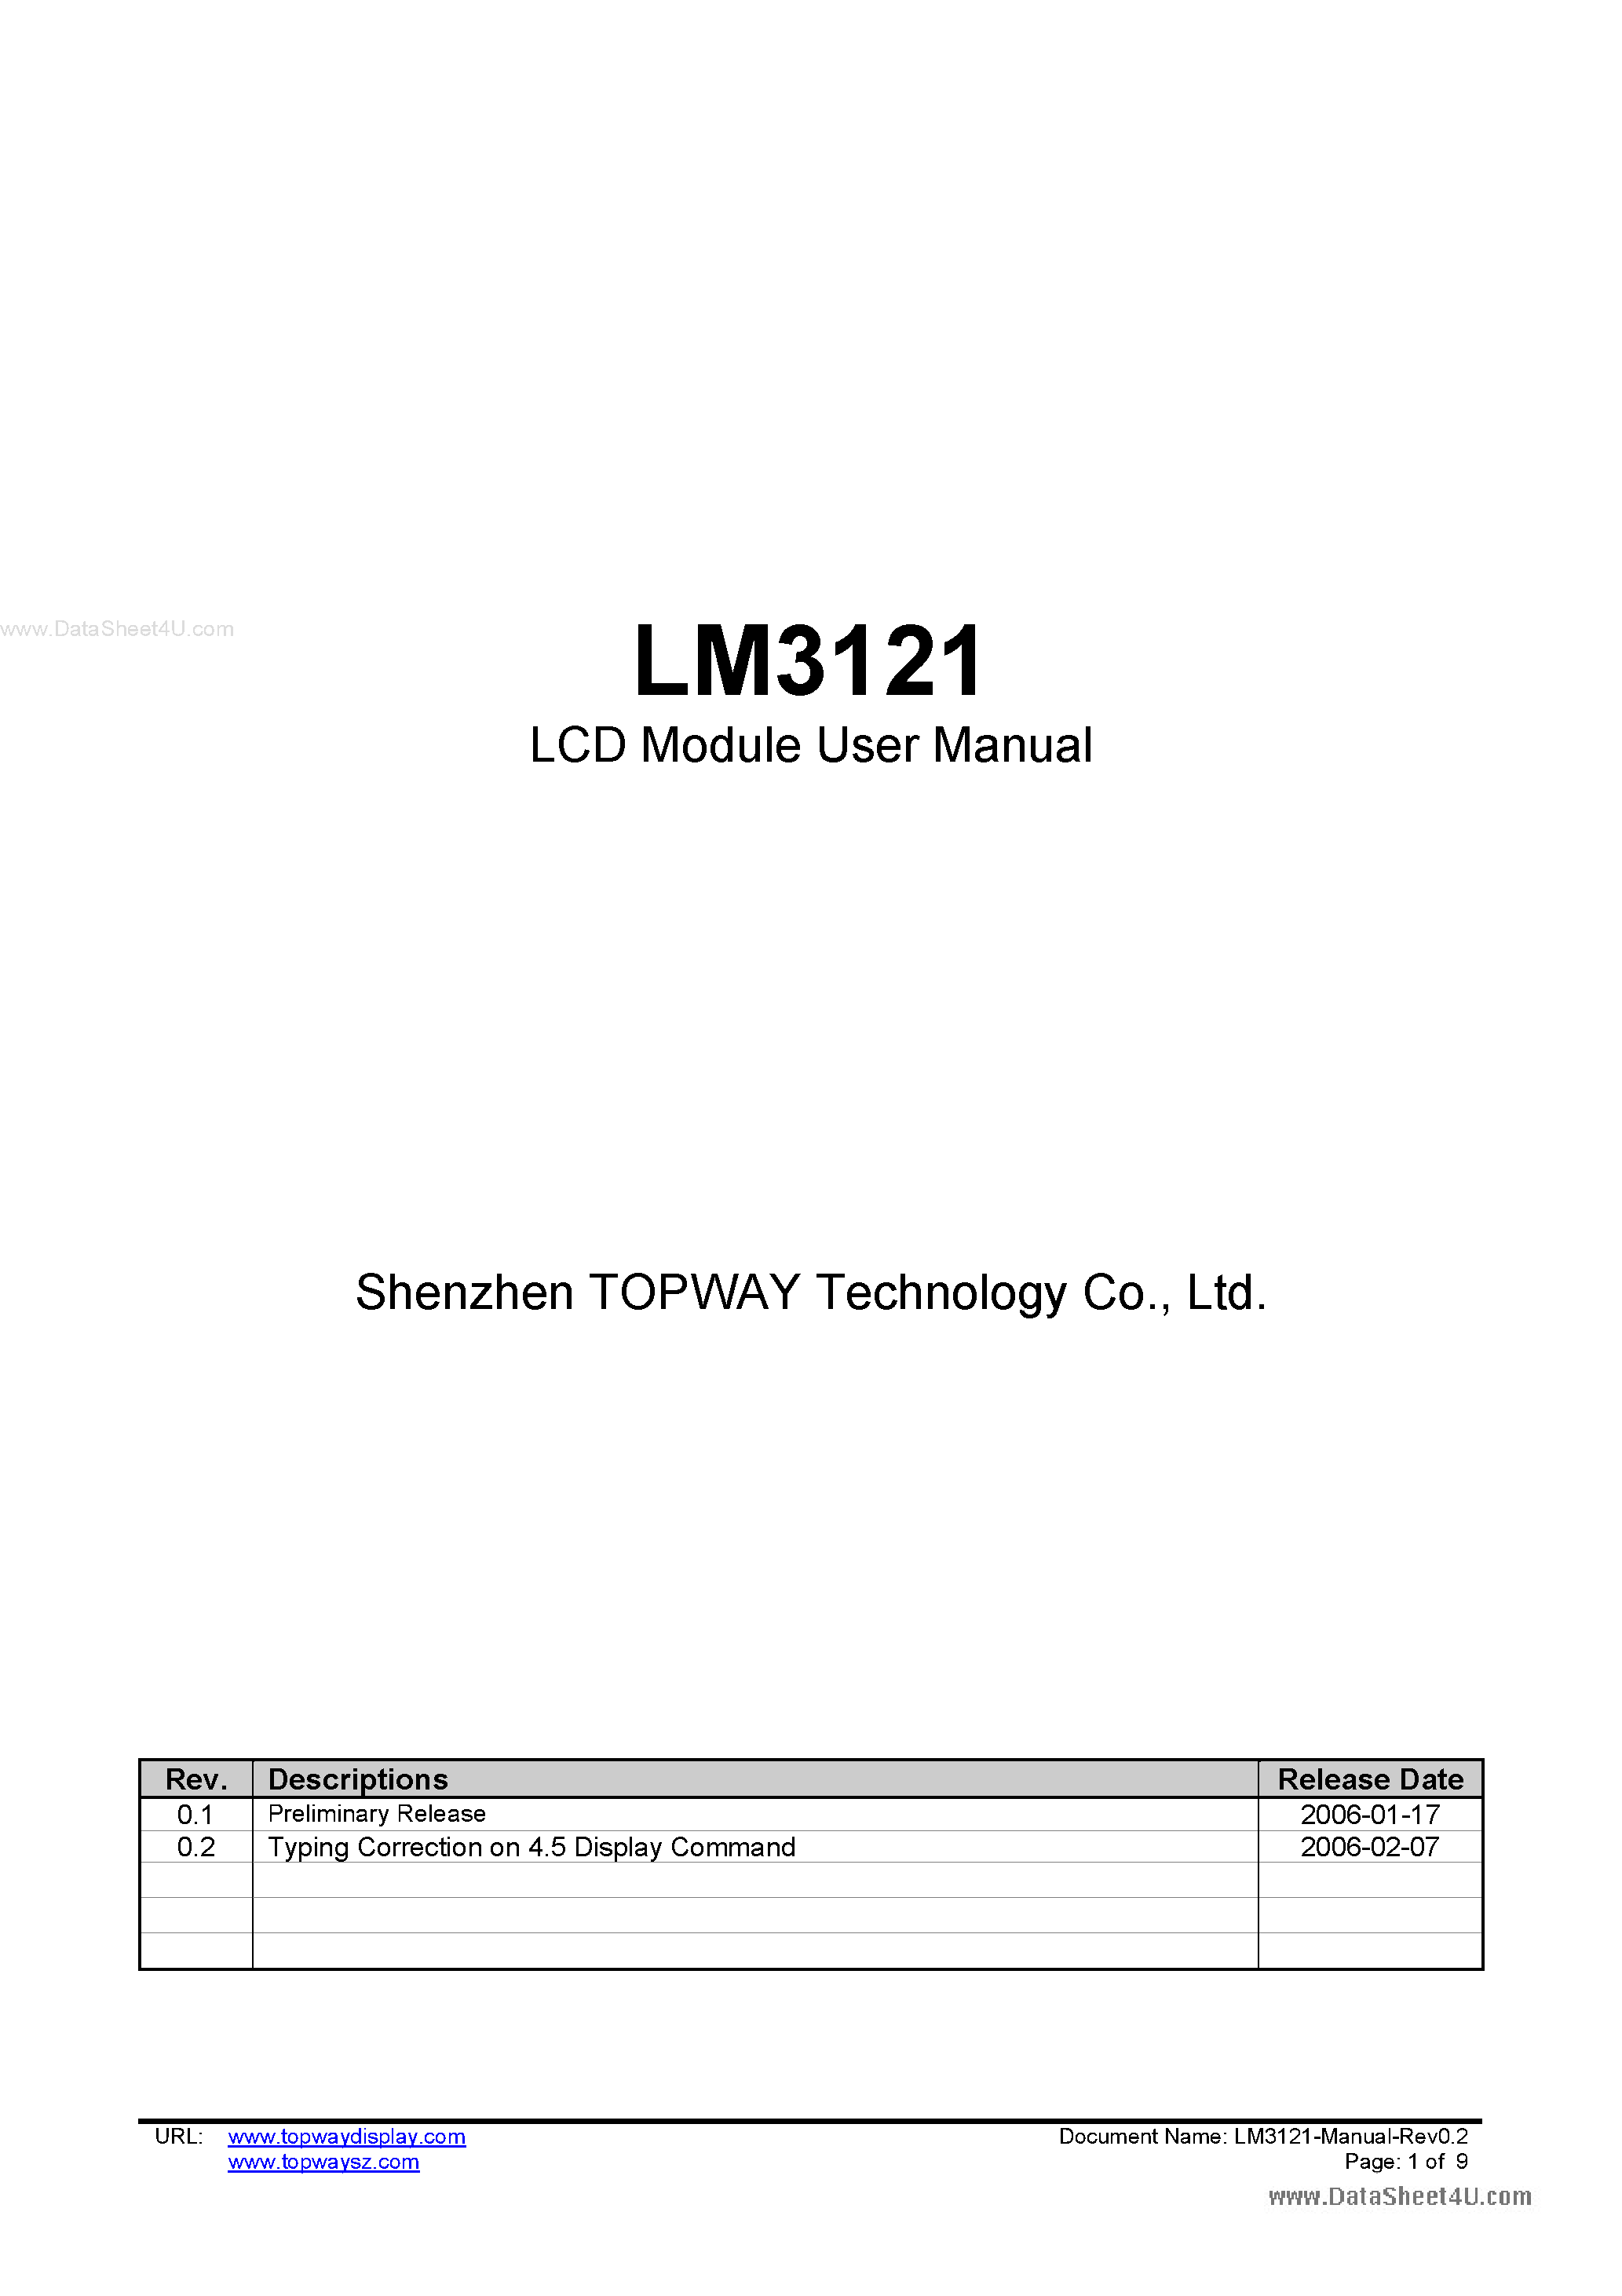 Даташит LM3121 - LCD Module страница 1